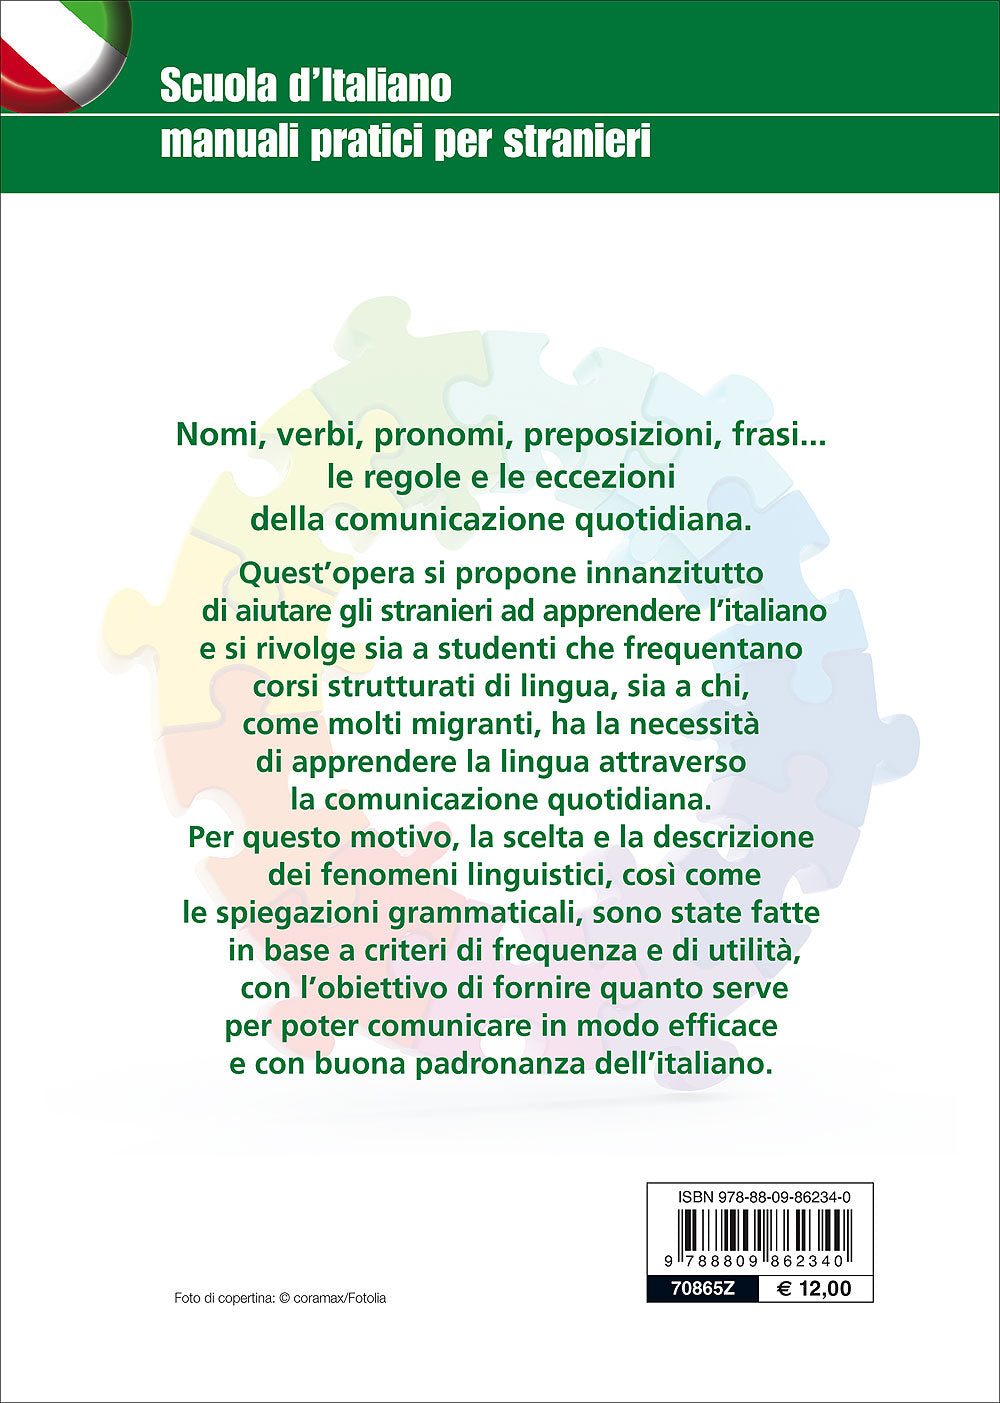 Grammatica italiana per stranieri::Articolo, aggettivo, sostantivo, verbo